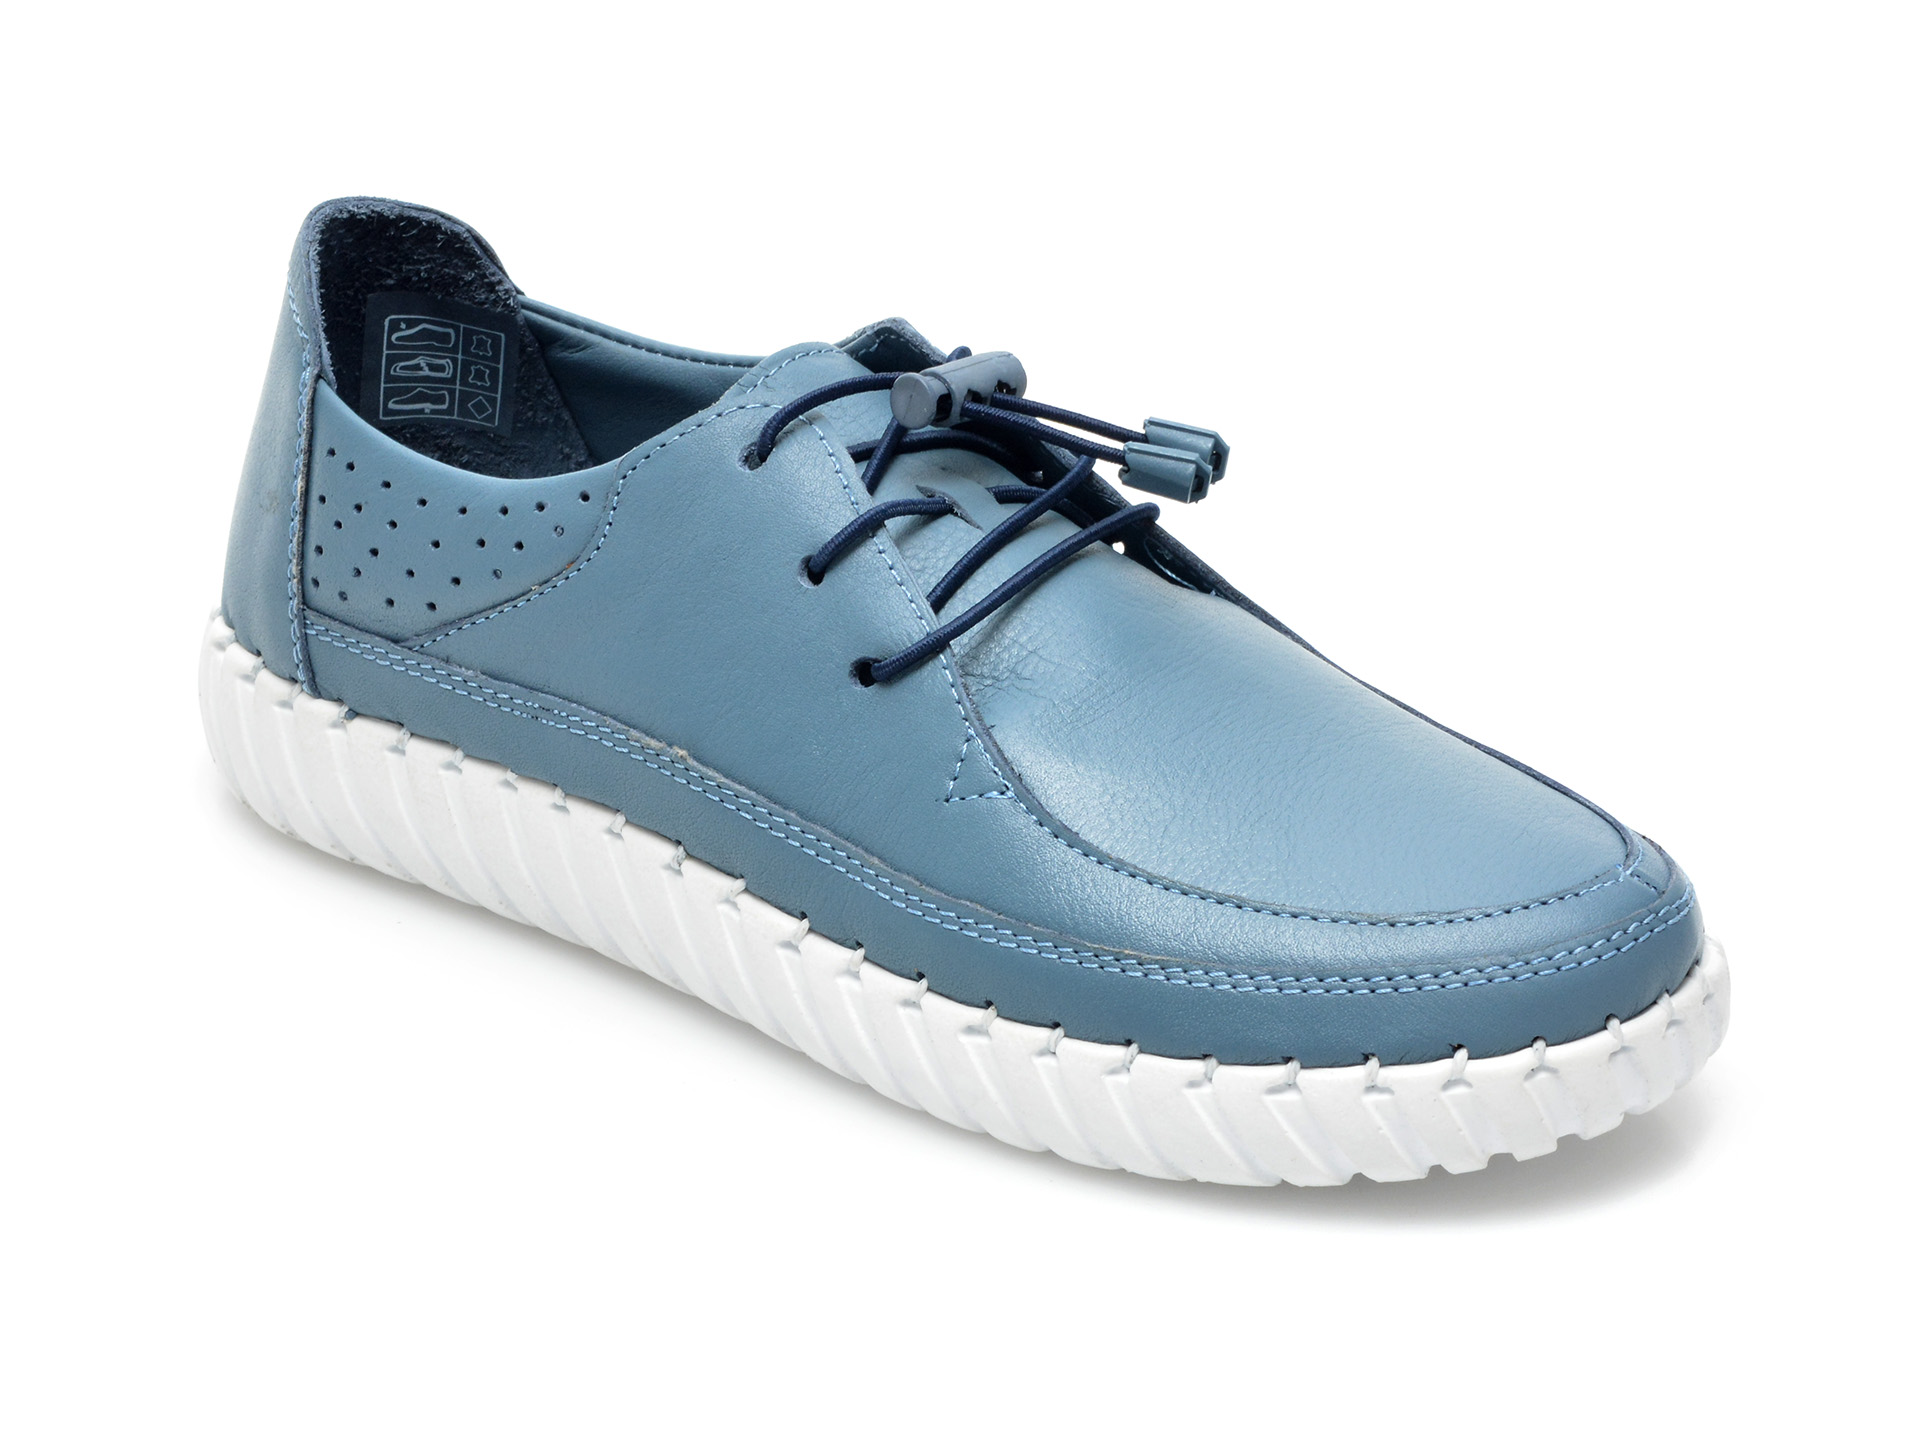 Pantofi FLAVIA PASSINI albastri, 110, din piele naturala 2023 ❤️ Pret Super Black Friday otter.ro imagine noua 2022